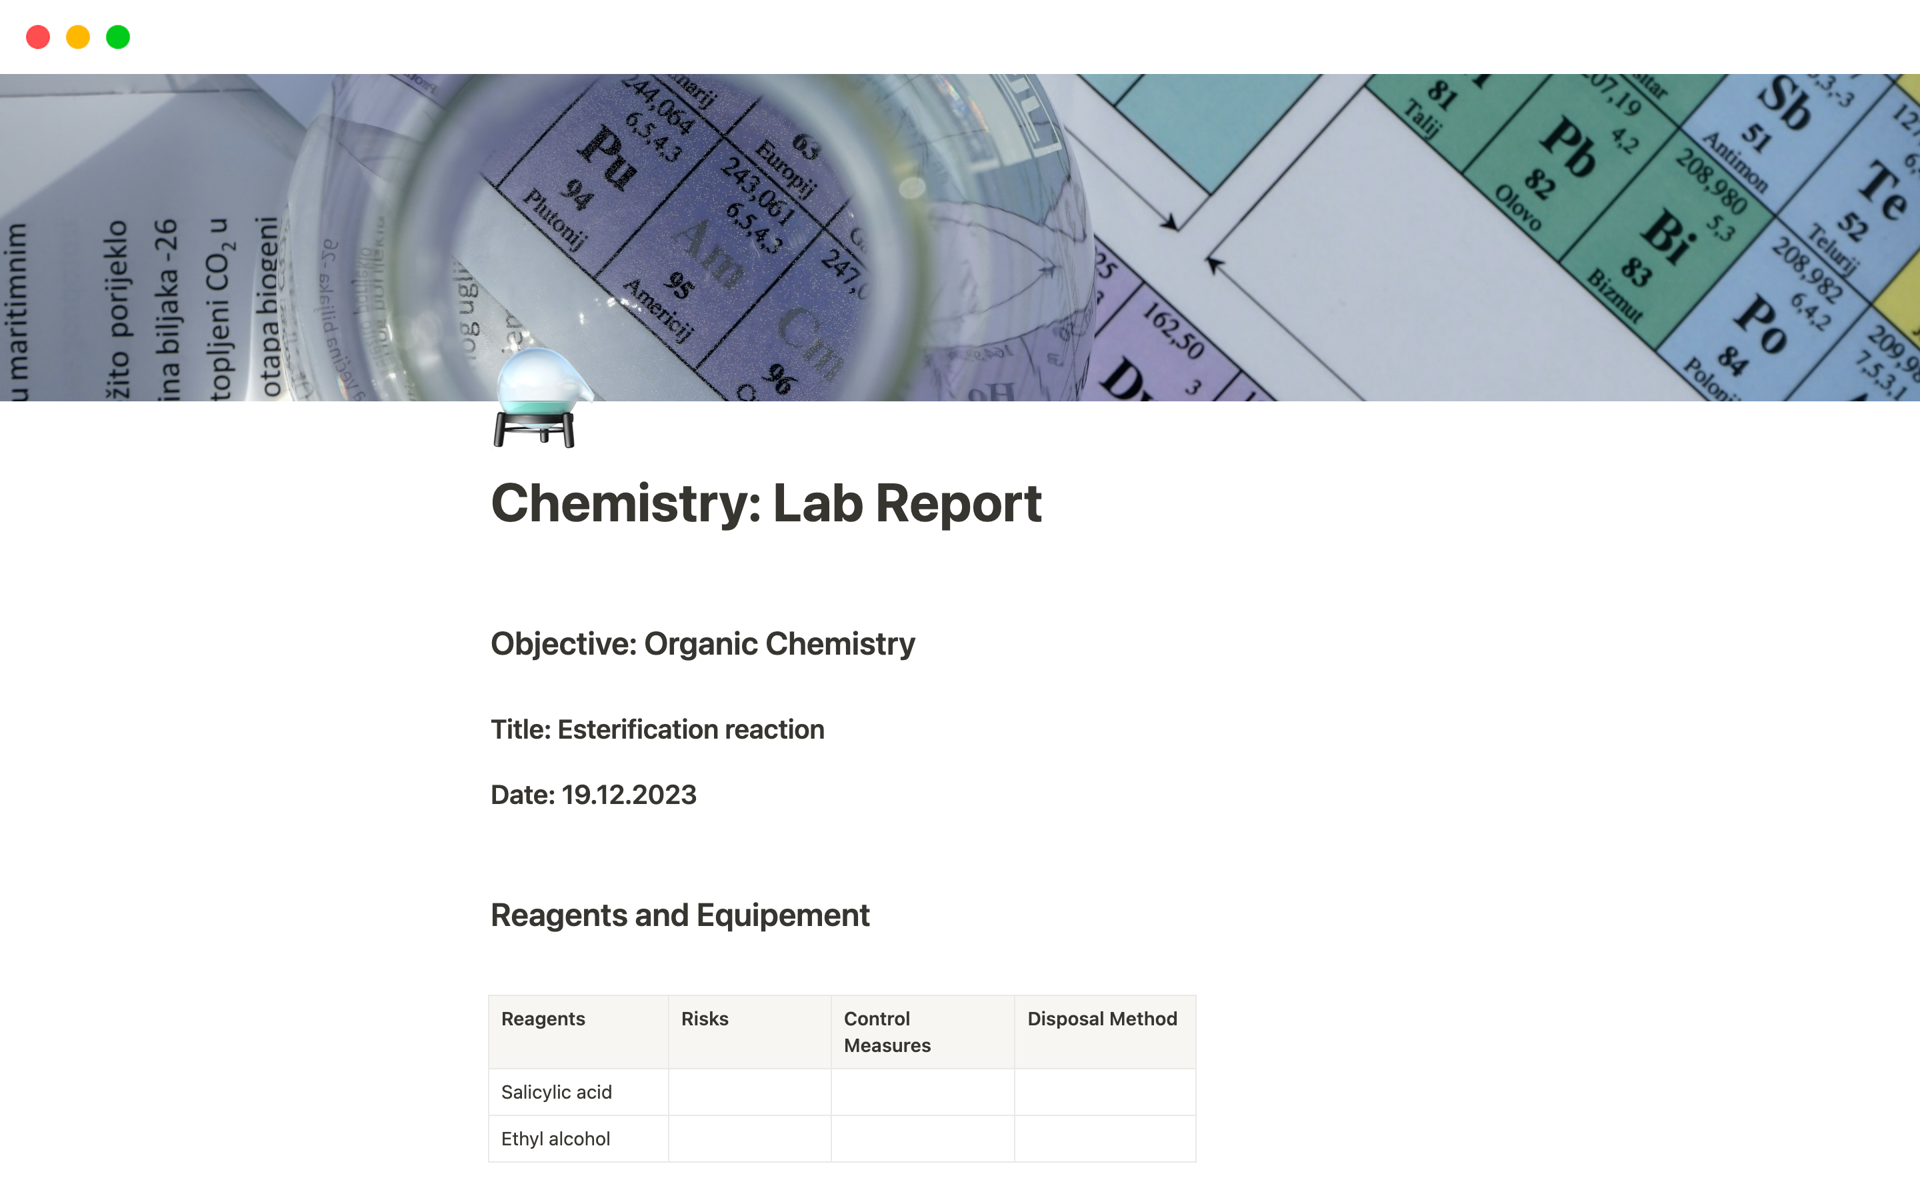 Aperçu du modèle de Chemistry Lab Report